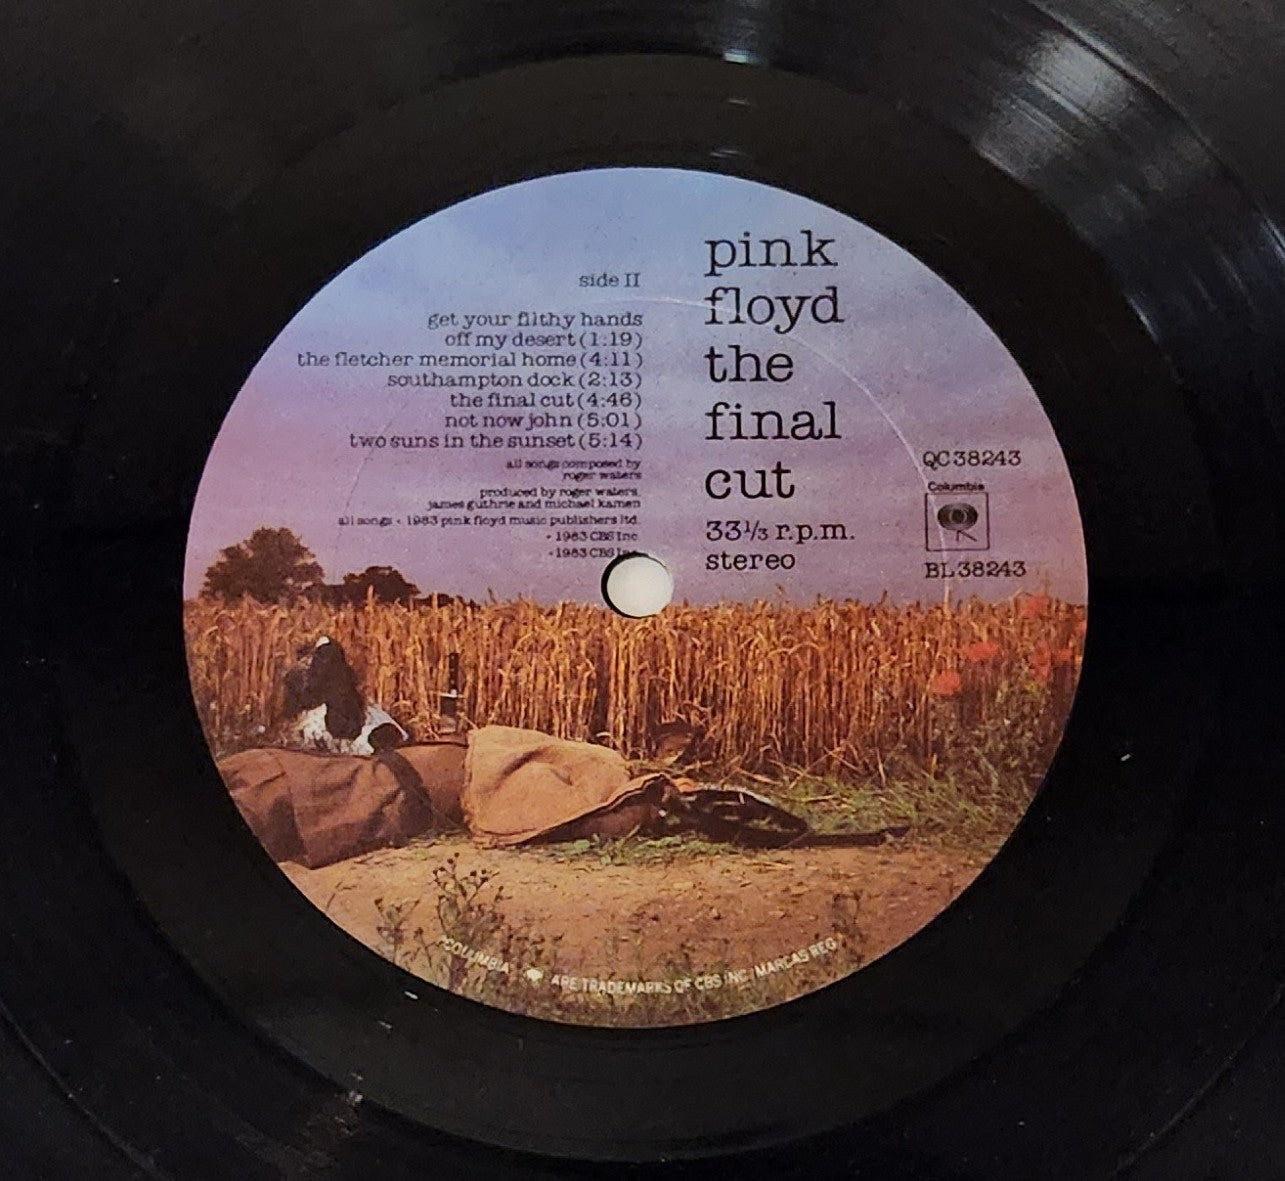 Pink Floyd "The Final Cut" 1983 Progressive Rock Record Album